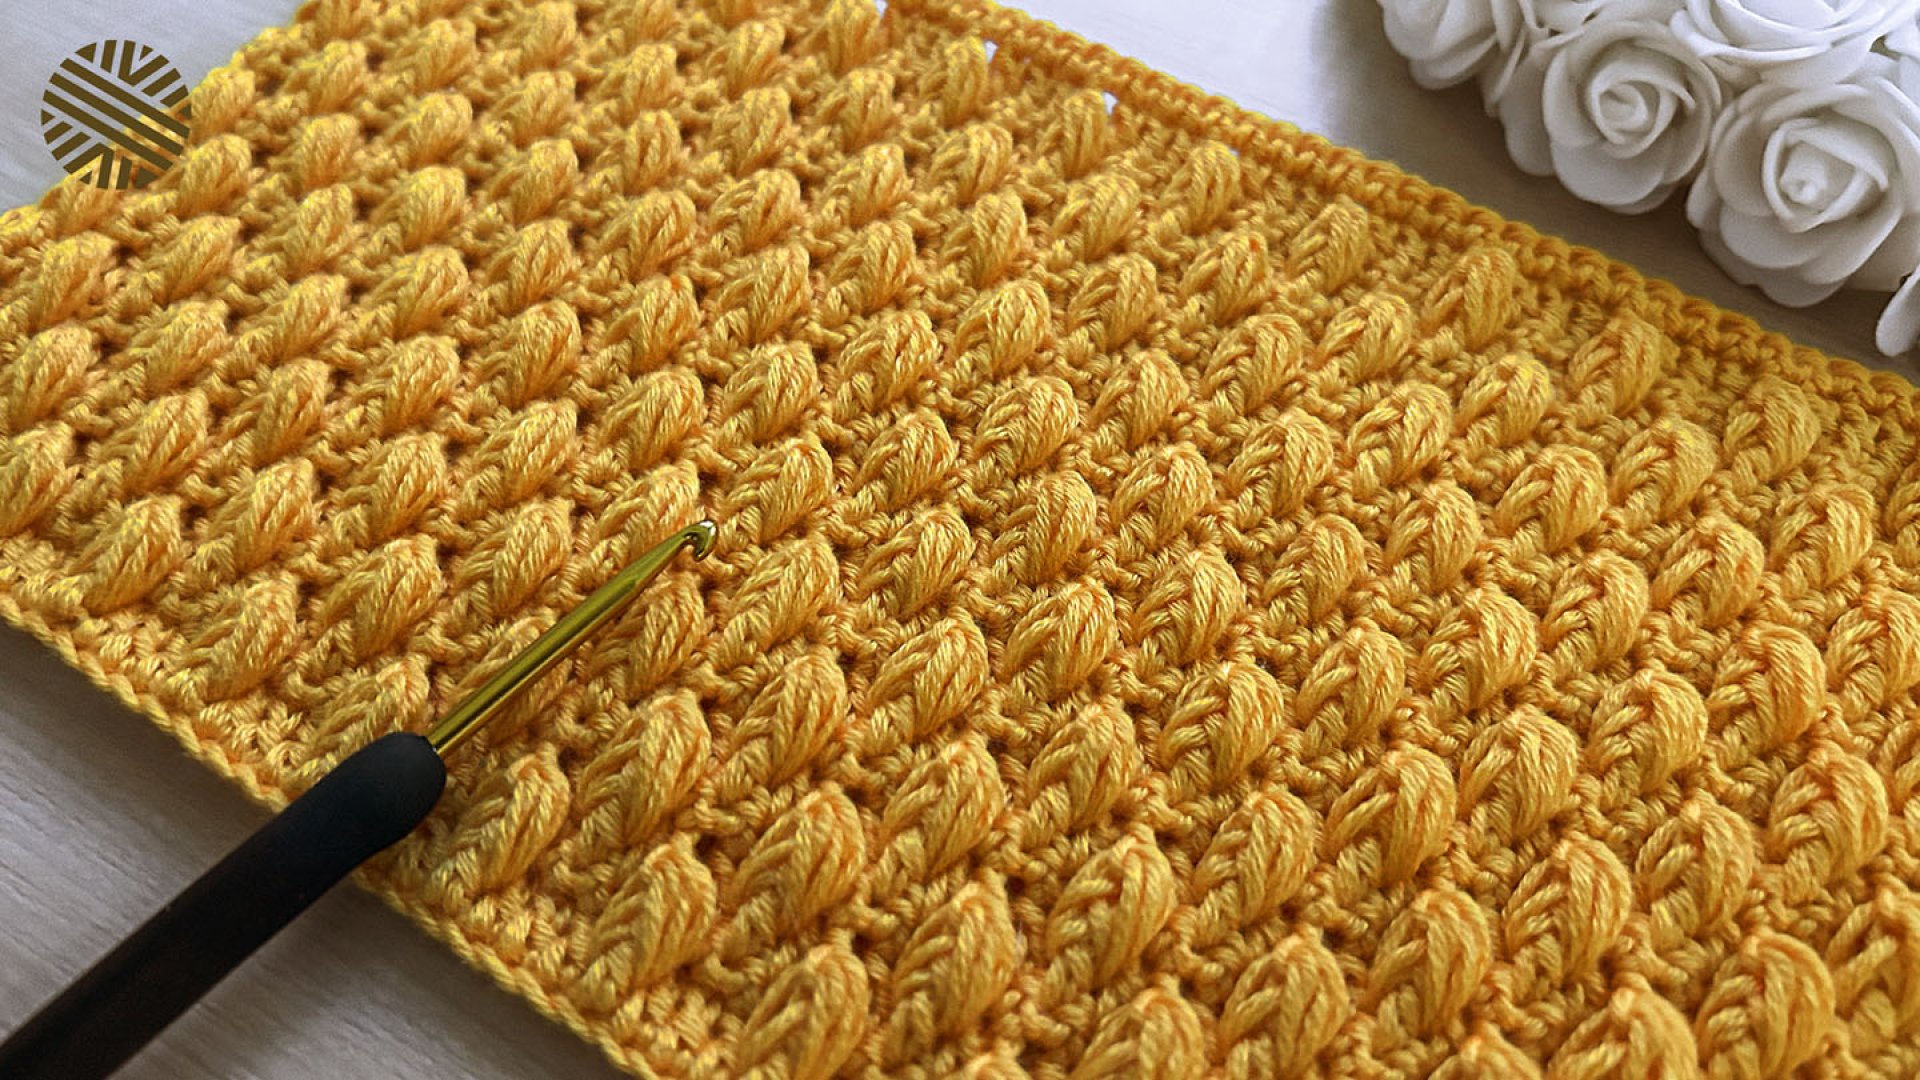 Brand New MASSIVE CROCHET STITCH! The Unique Crochet Pattern You